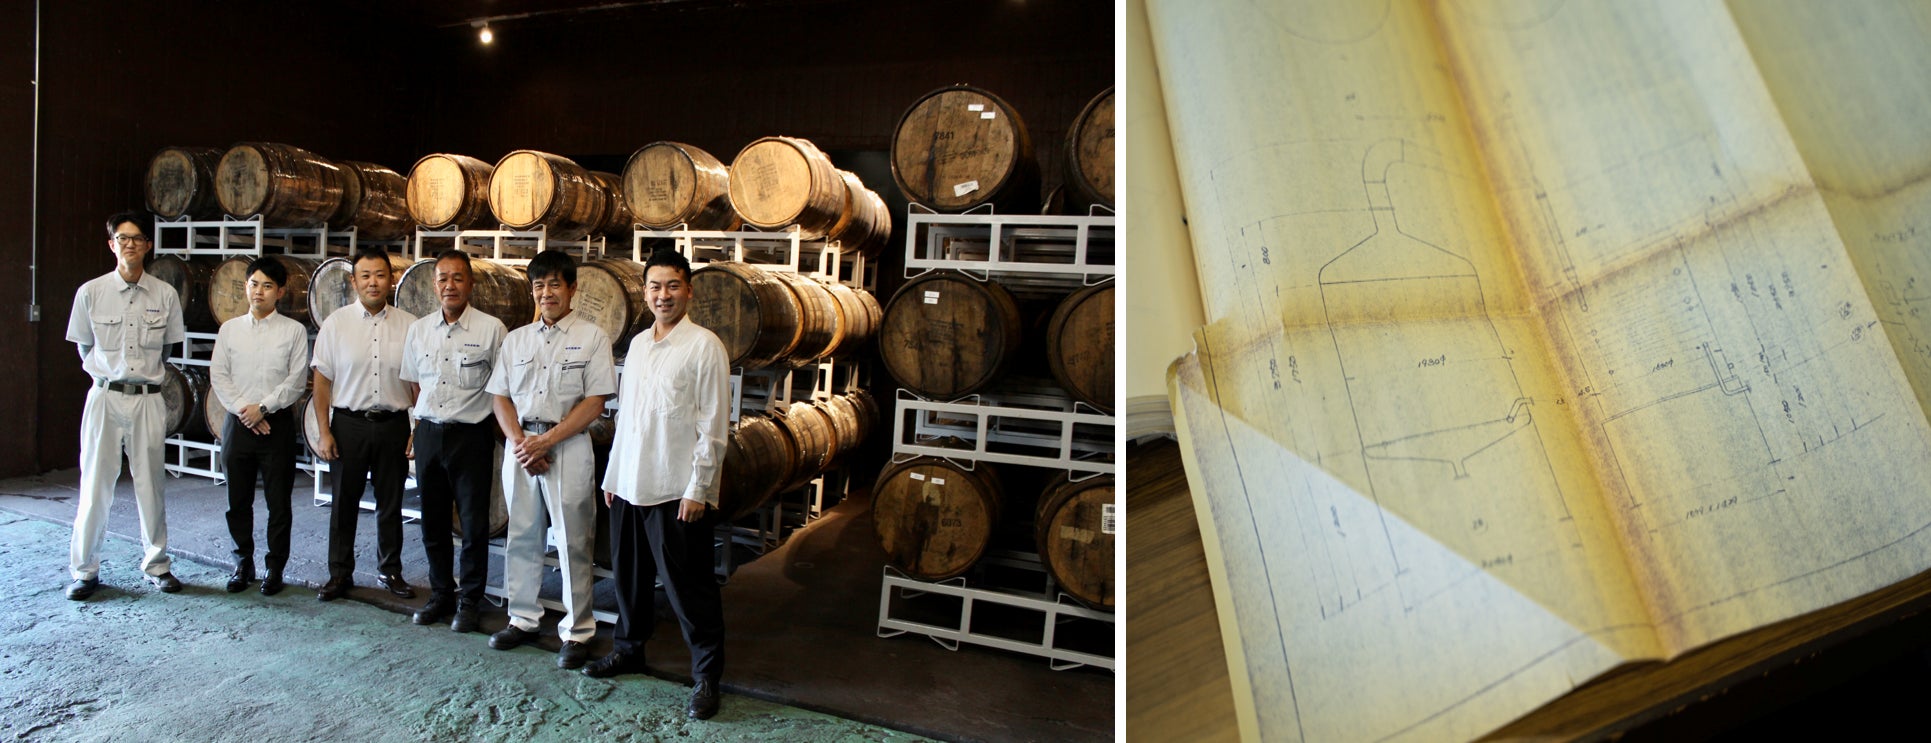 明利酒類が約60年ぶりにクラフトウイスキー造りを再開  　　　　  　　　 　　　　　　　　　　茨城県水戸市に高藏蒸留所｜TAKAZO Distilleryを立ち上げ